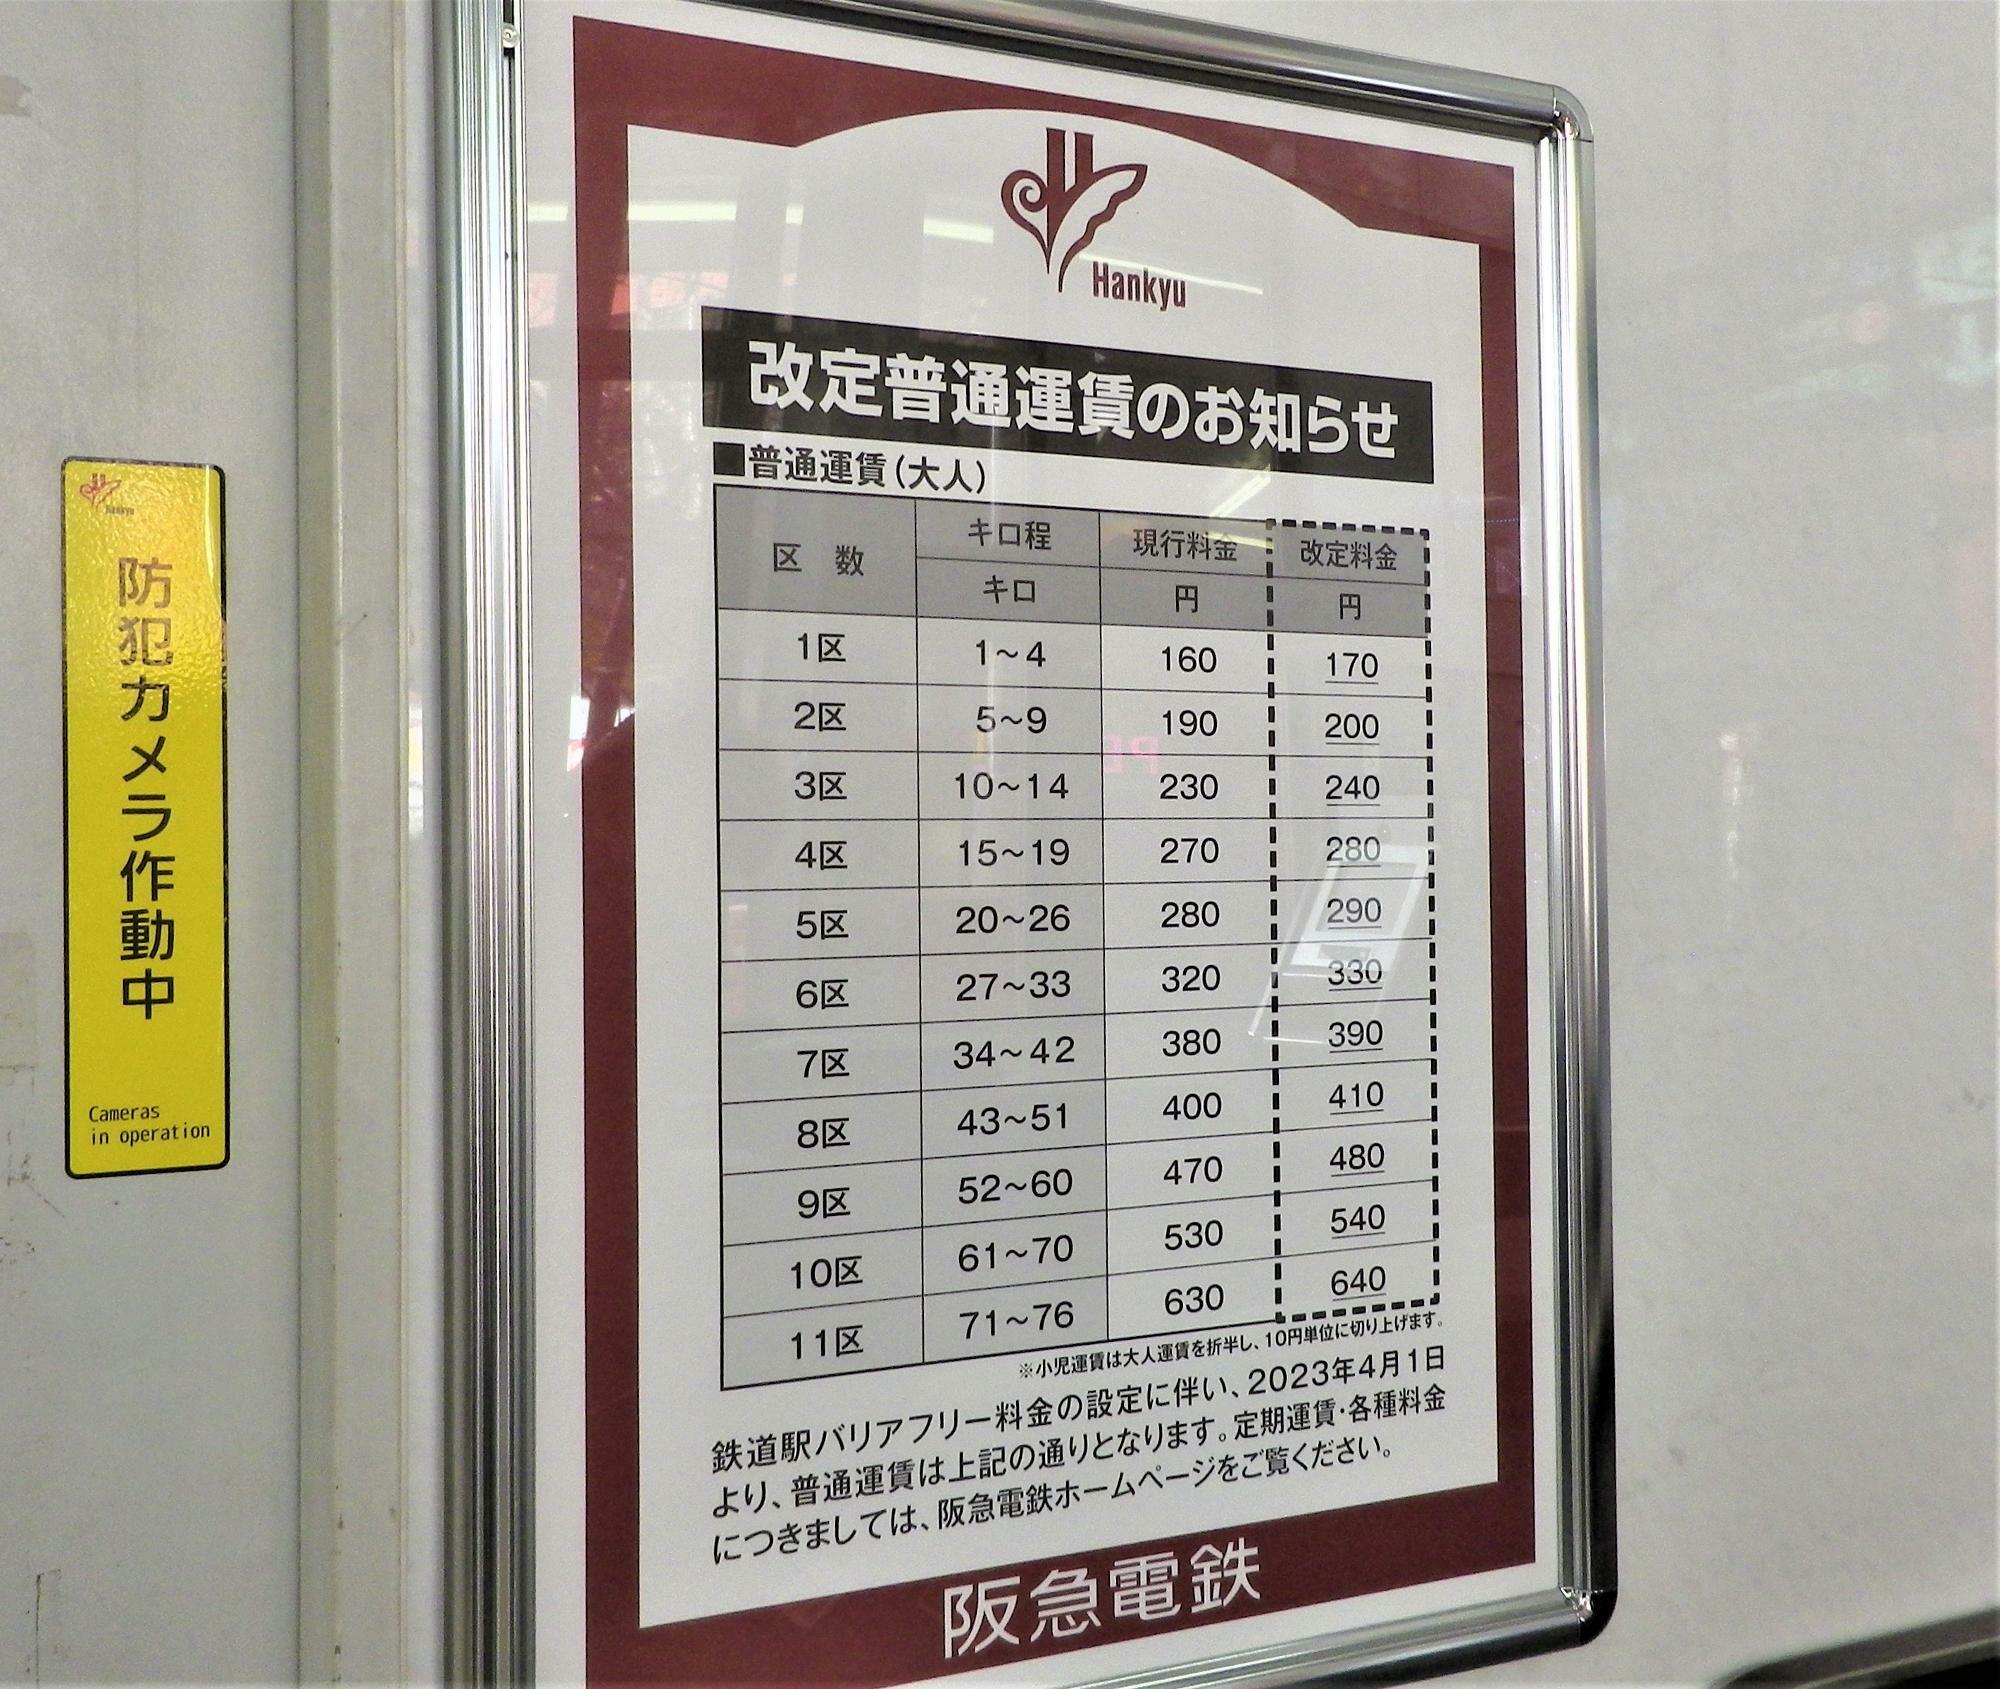 普通運賃は10円の値上がり。